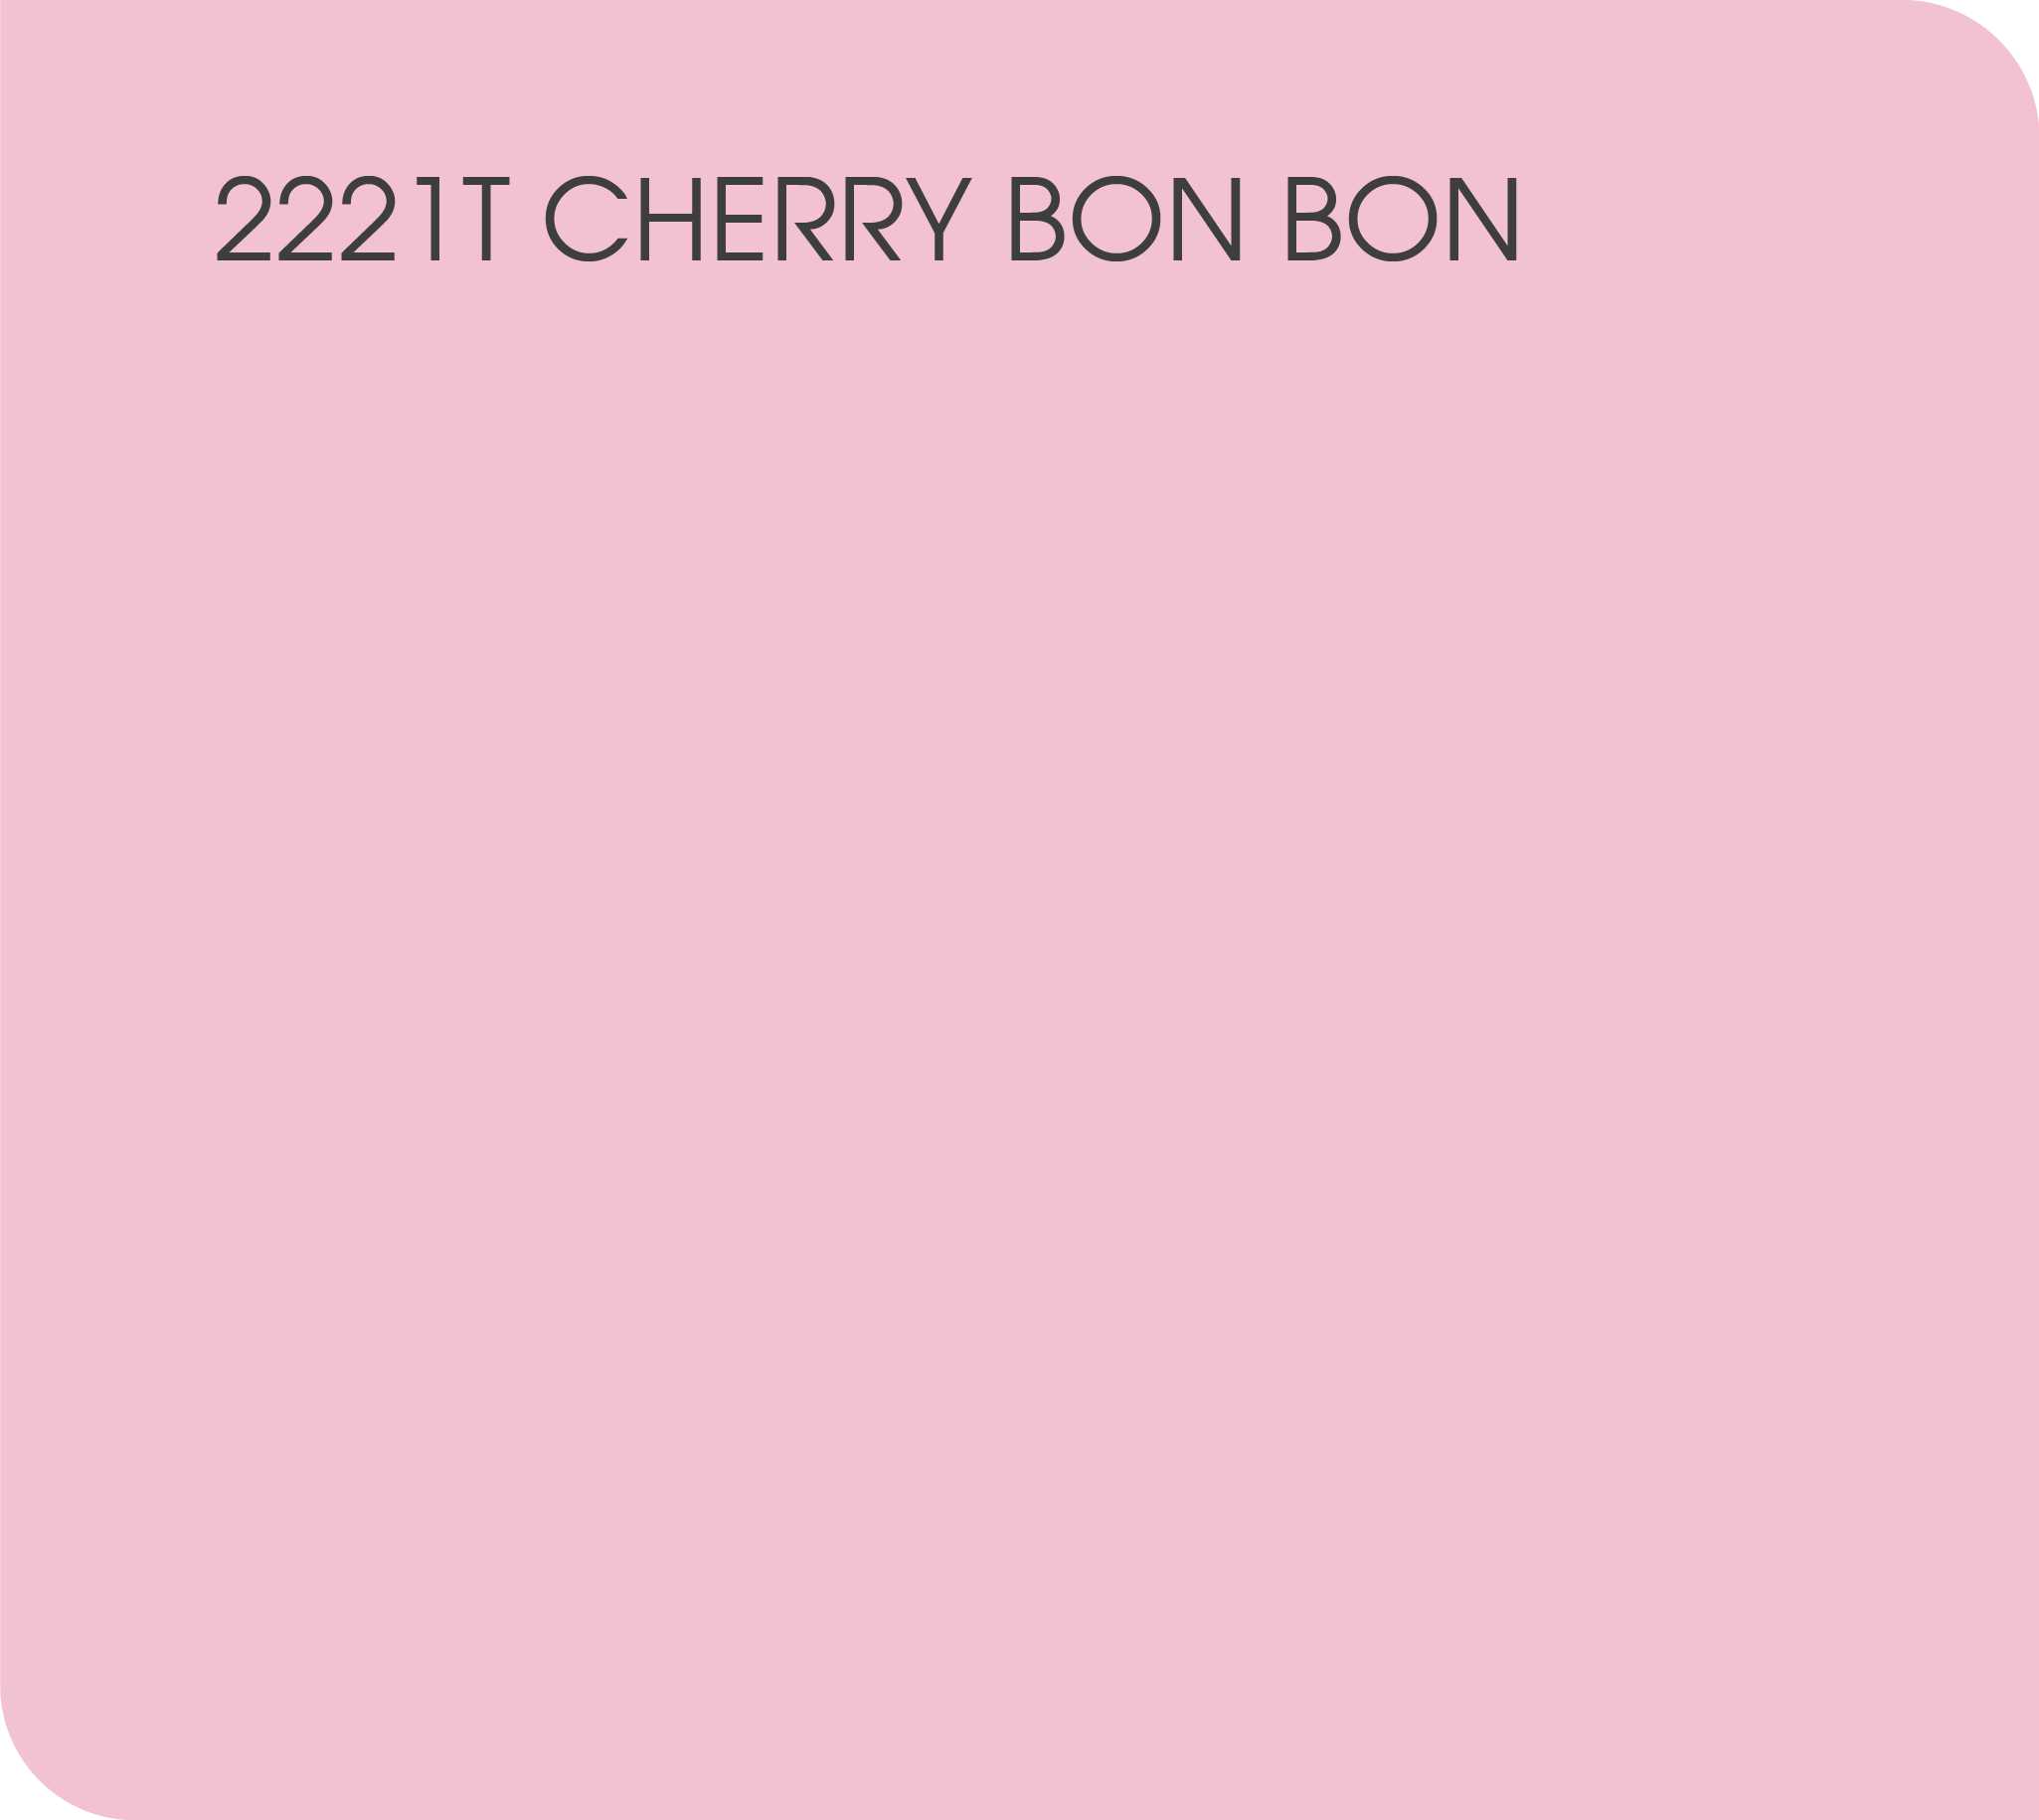 Cherry Bon Bon